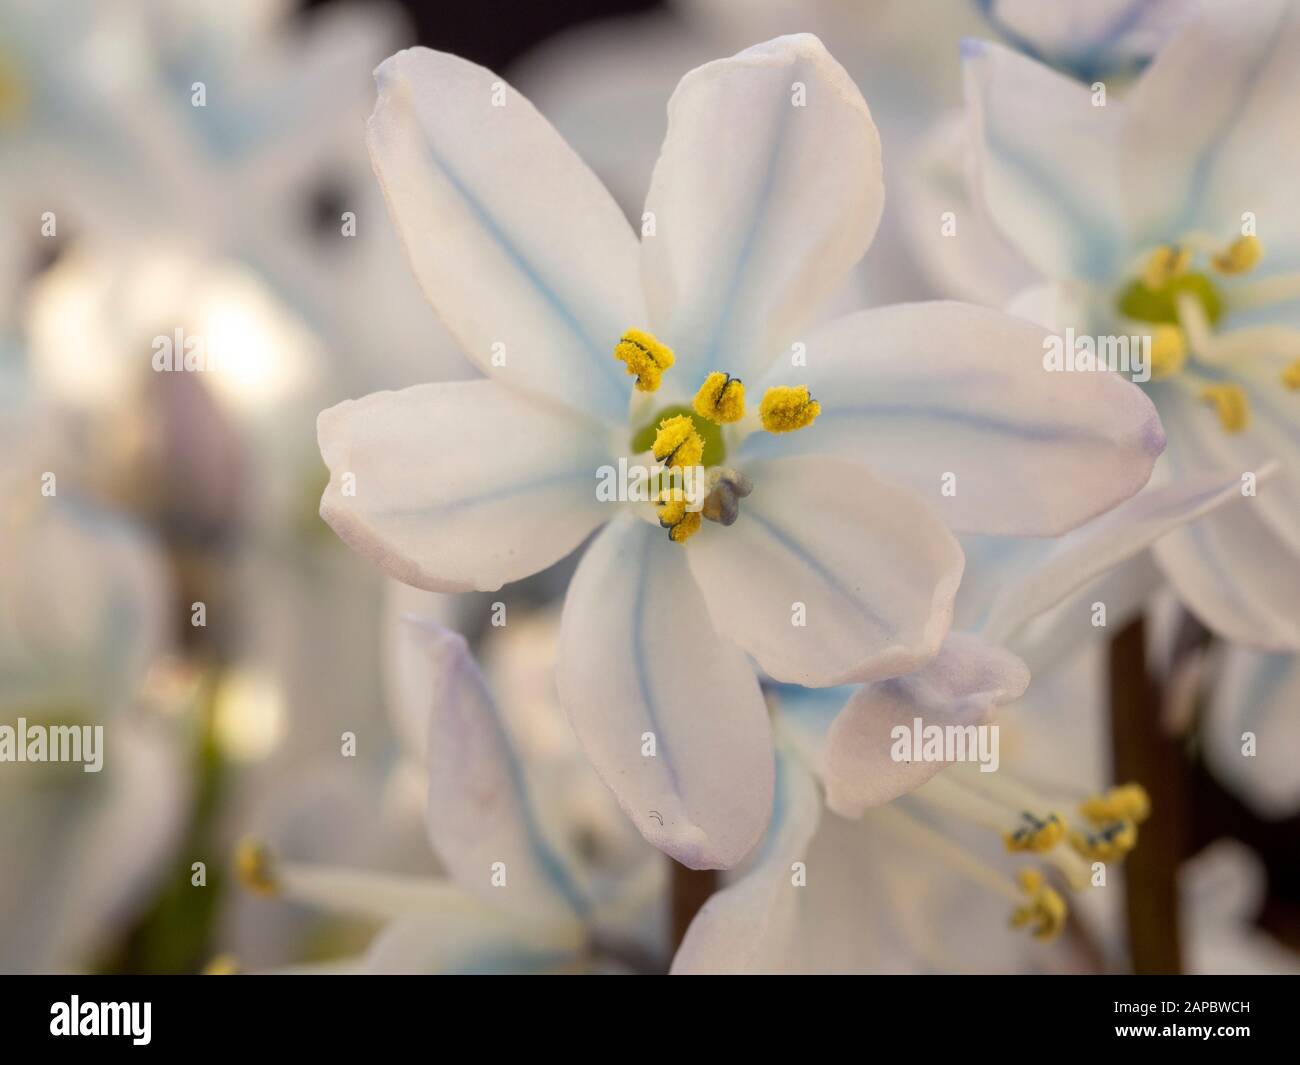 Gros plan d'une jolie fleur blanche de Scilla mischtschenkoana avec pétales blancs et bleus et pollen jaune Banque D'Images